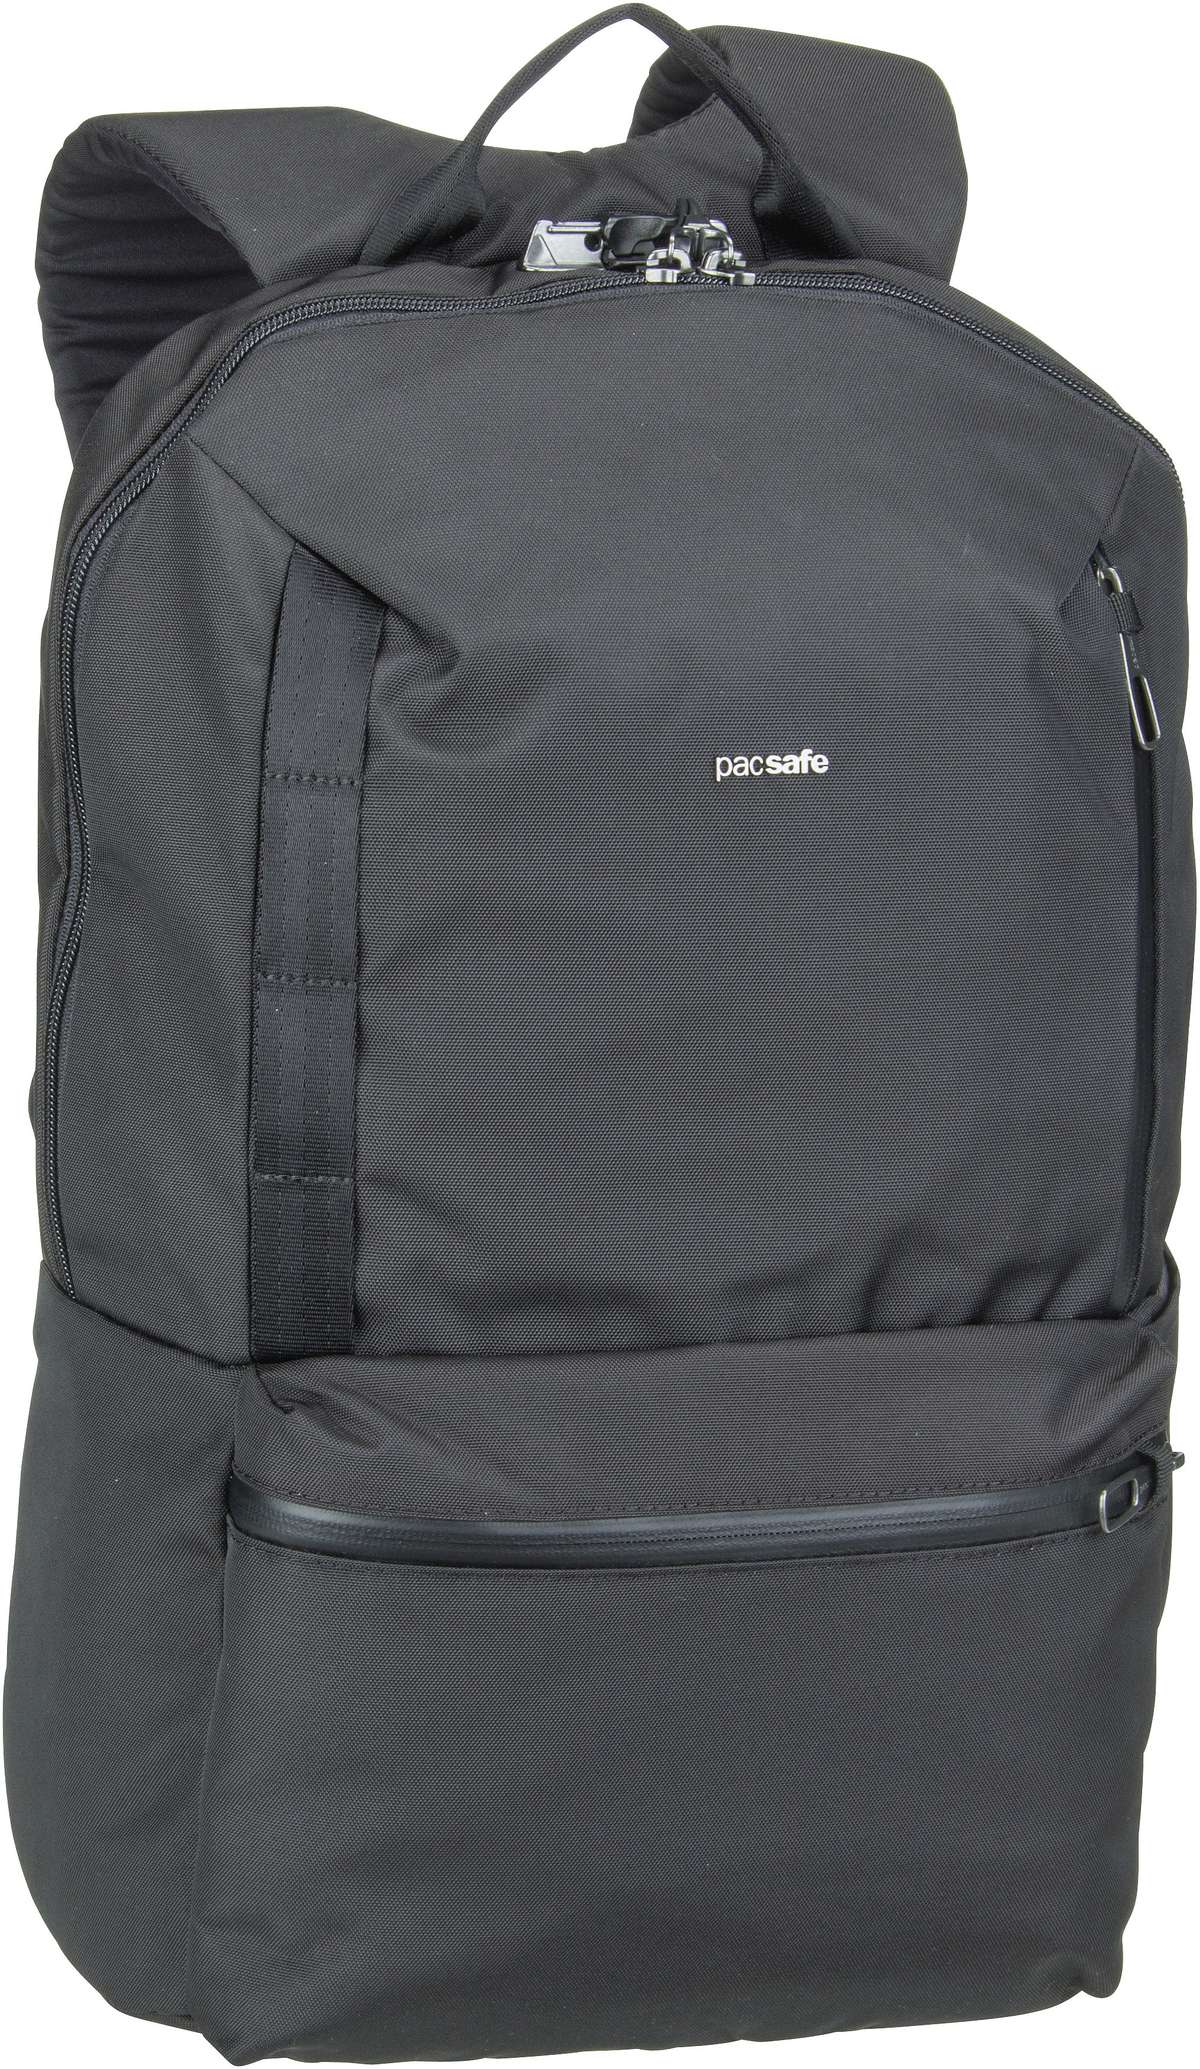 Pacsafe Metrosafe X 20L Backpack  in Schwarz (20 Liter), Rucksack / Backpack